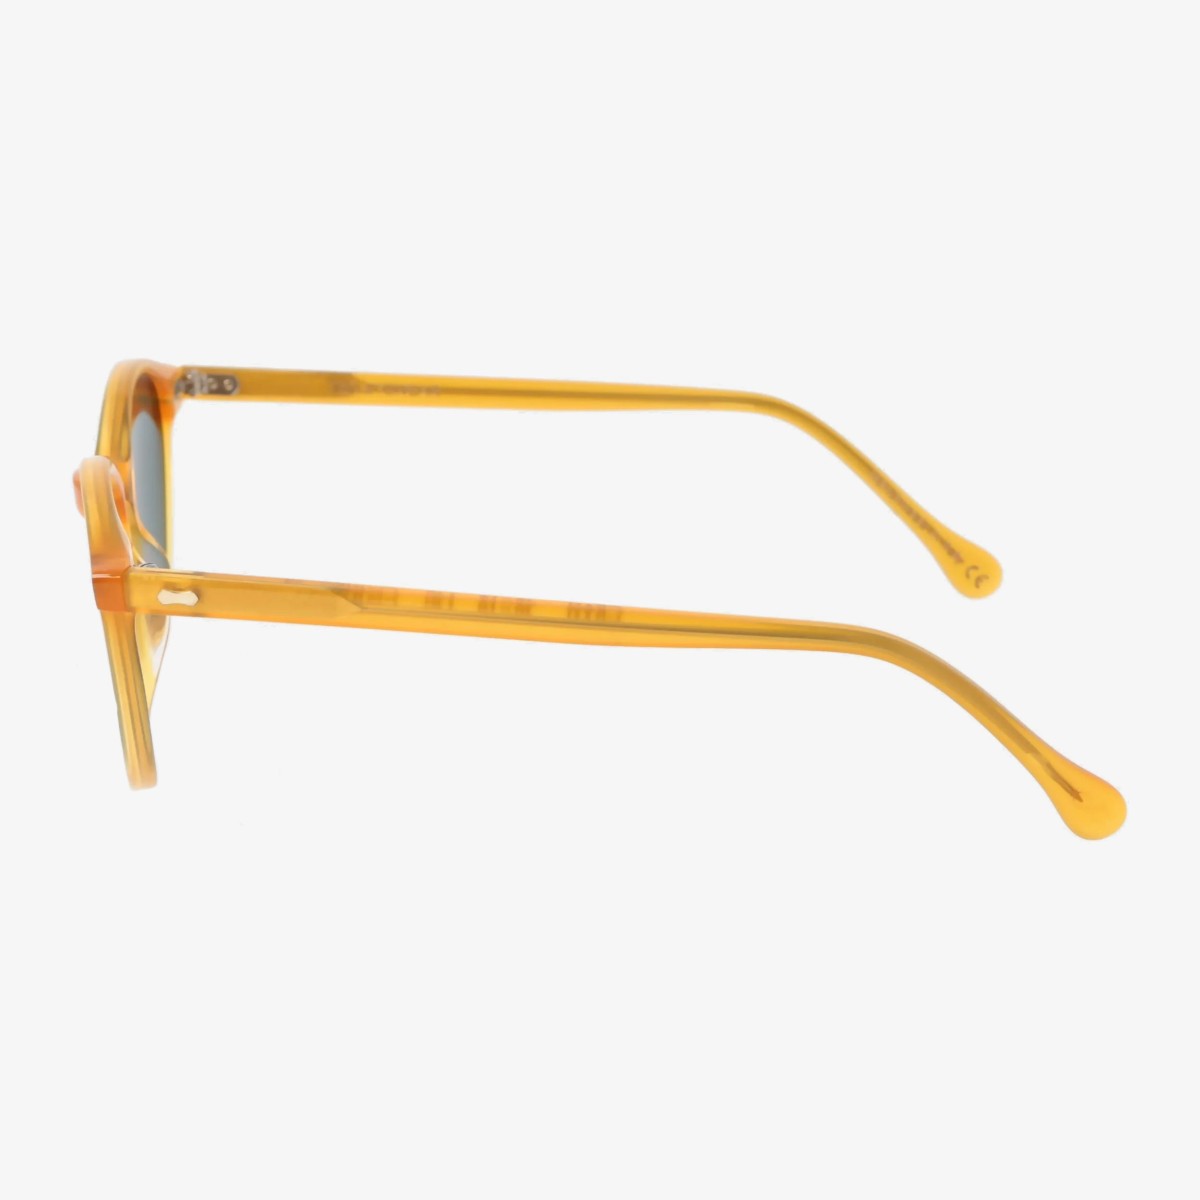 TBD Eyewear Cran saulės akiniai geltonais rėmeliais ir žaliais lęšiais